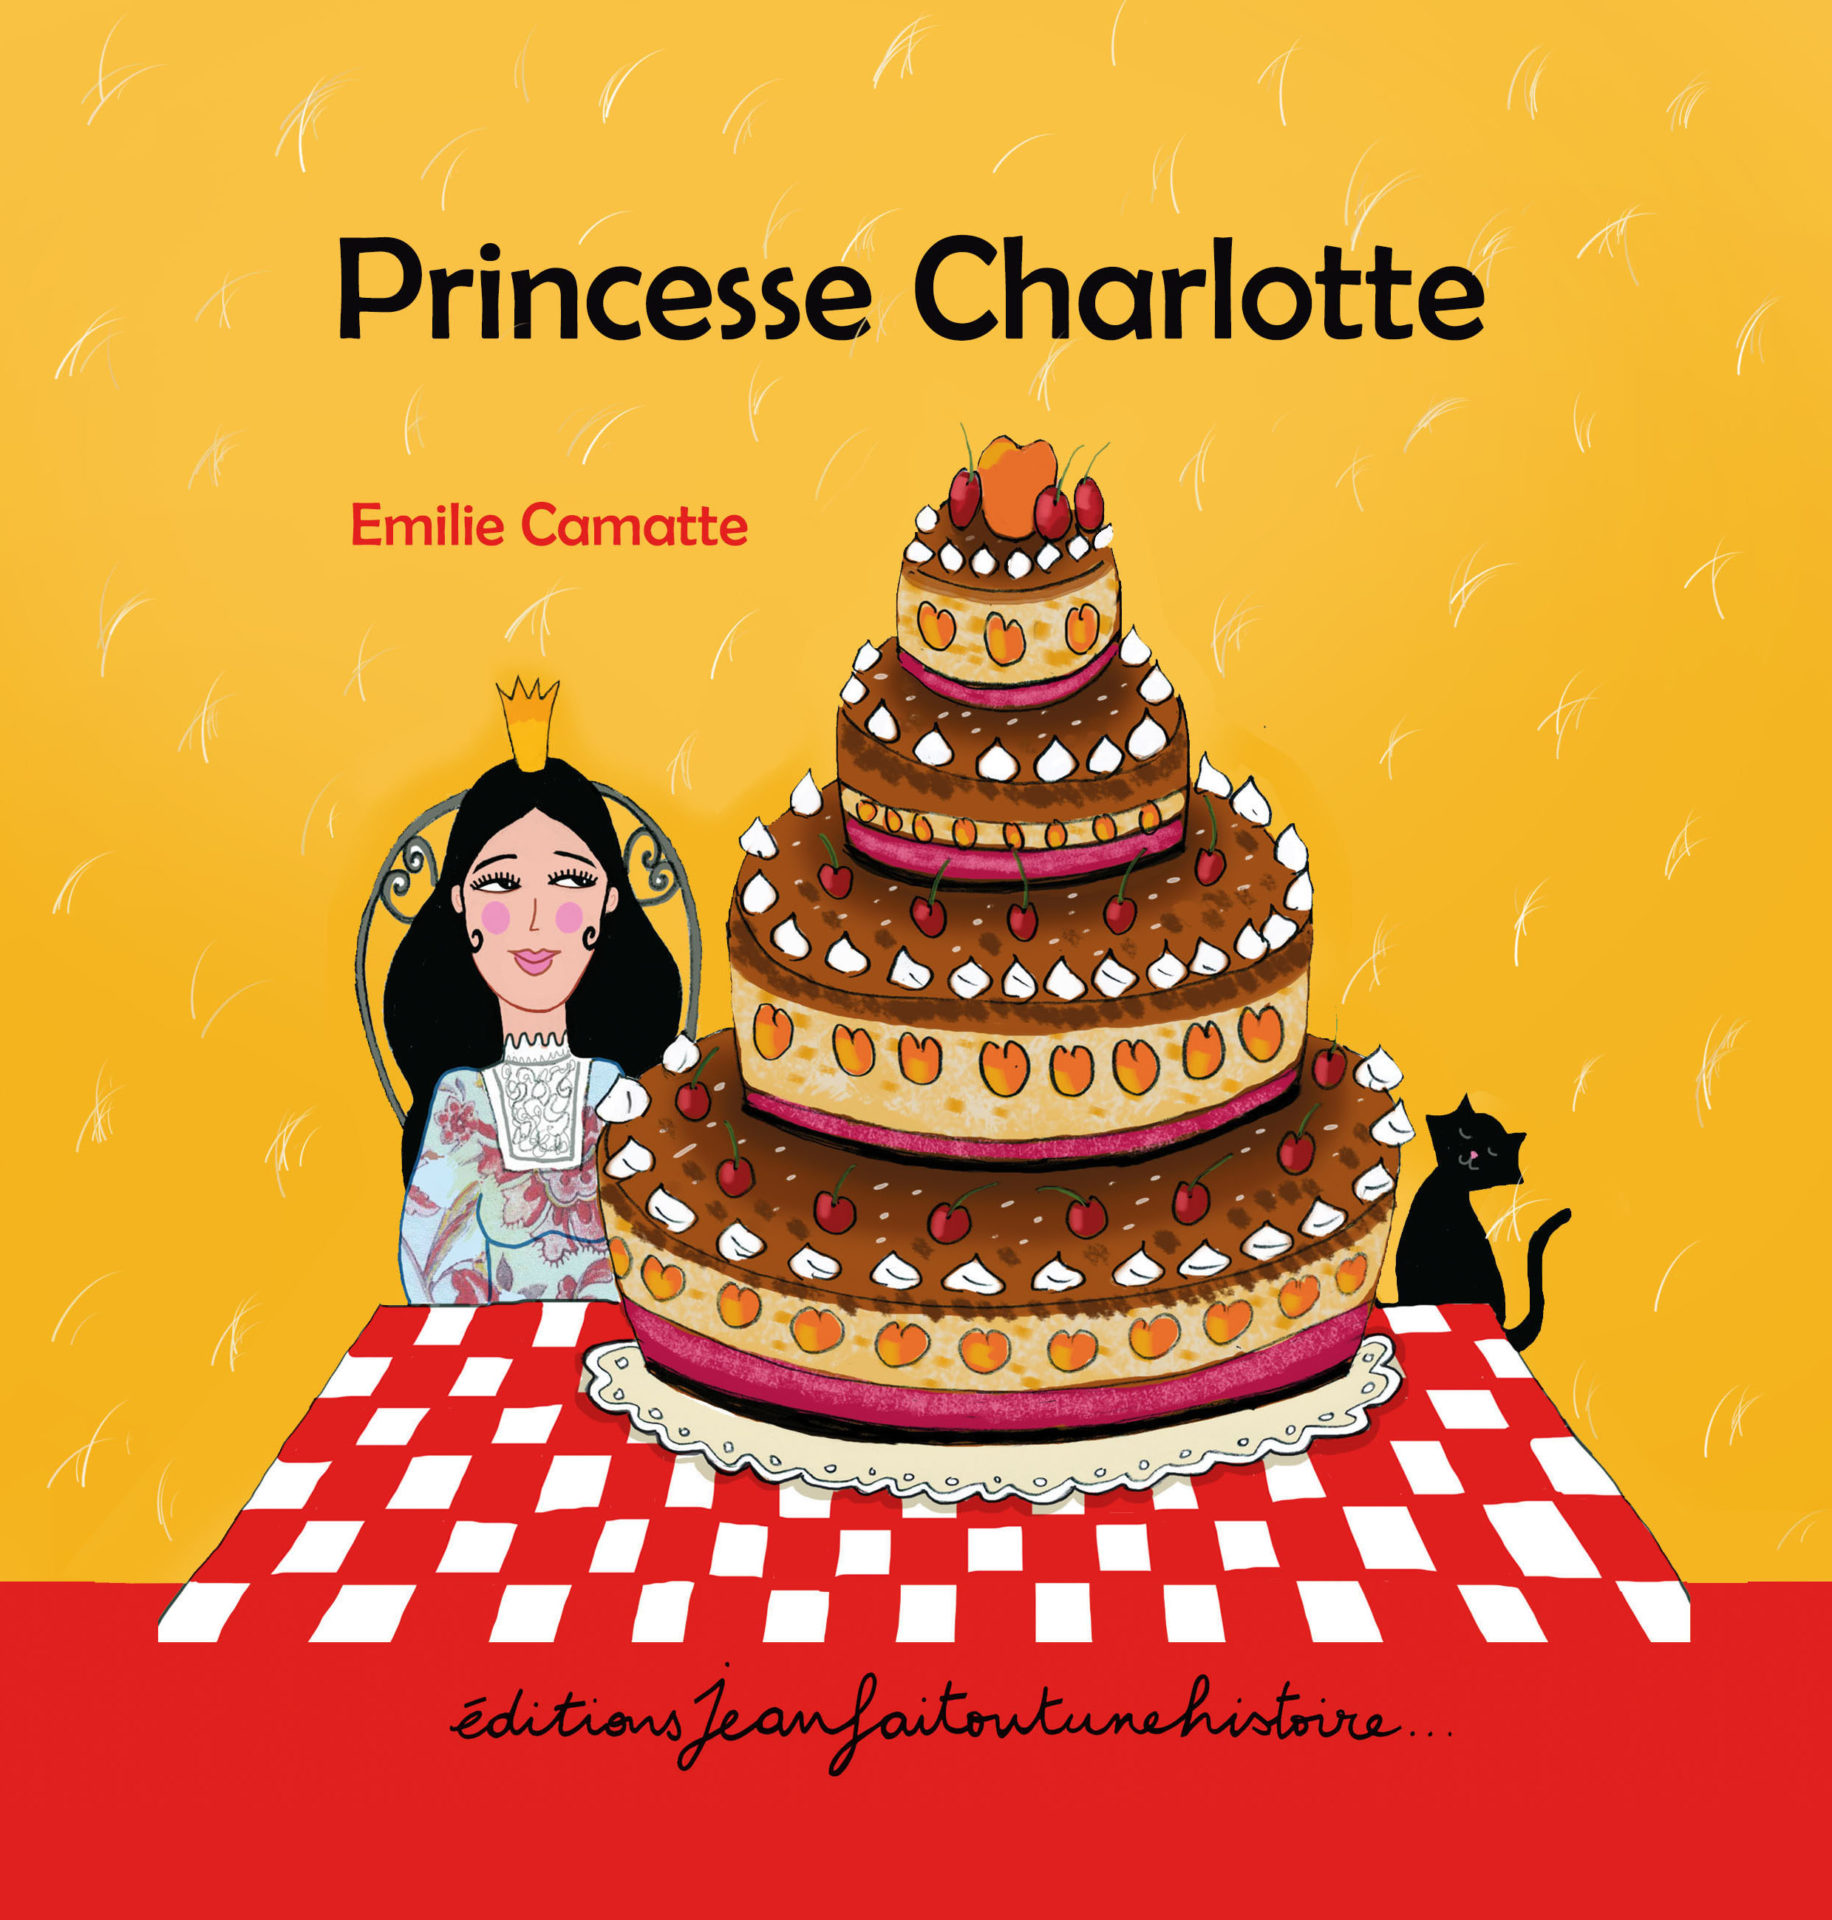 La photo d'anniversaire de la princesse Charlotte – Dans le